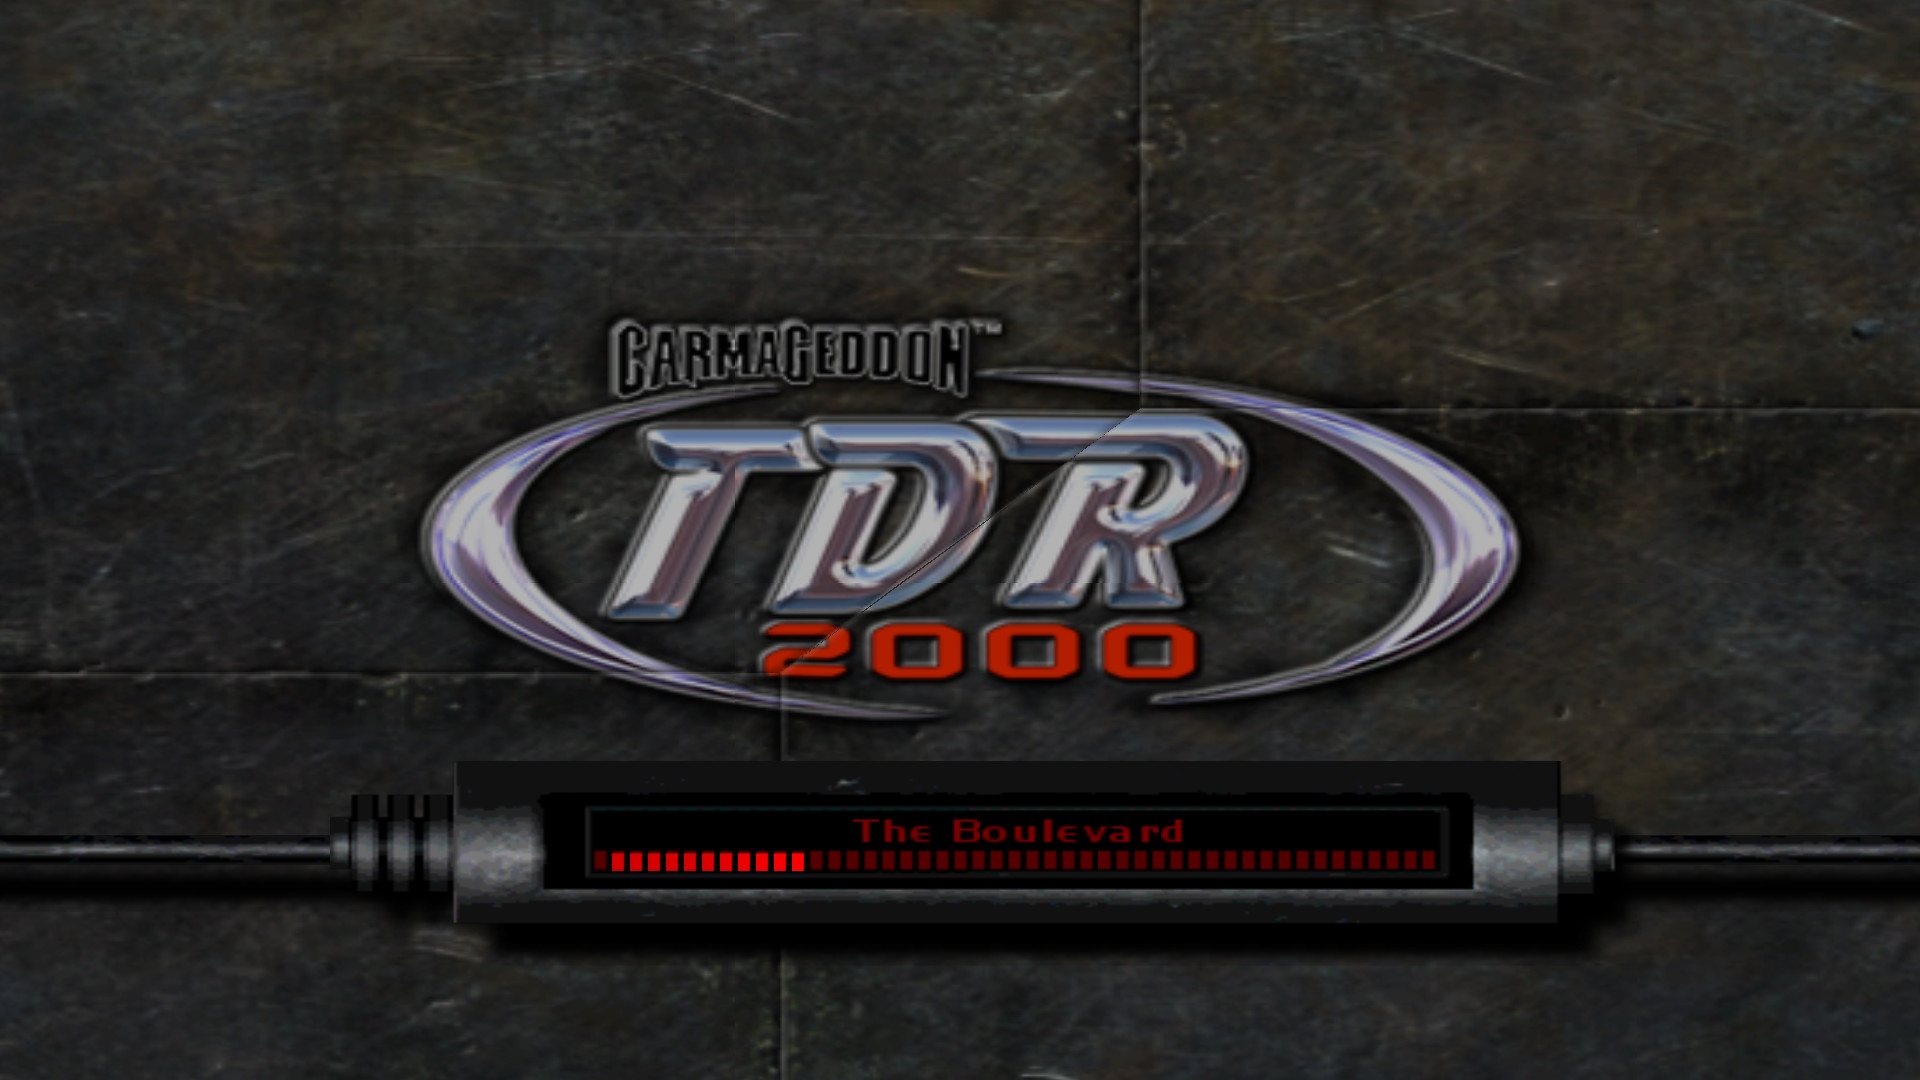 Carmageddon TDR 2000 Steam Gift $3.13